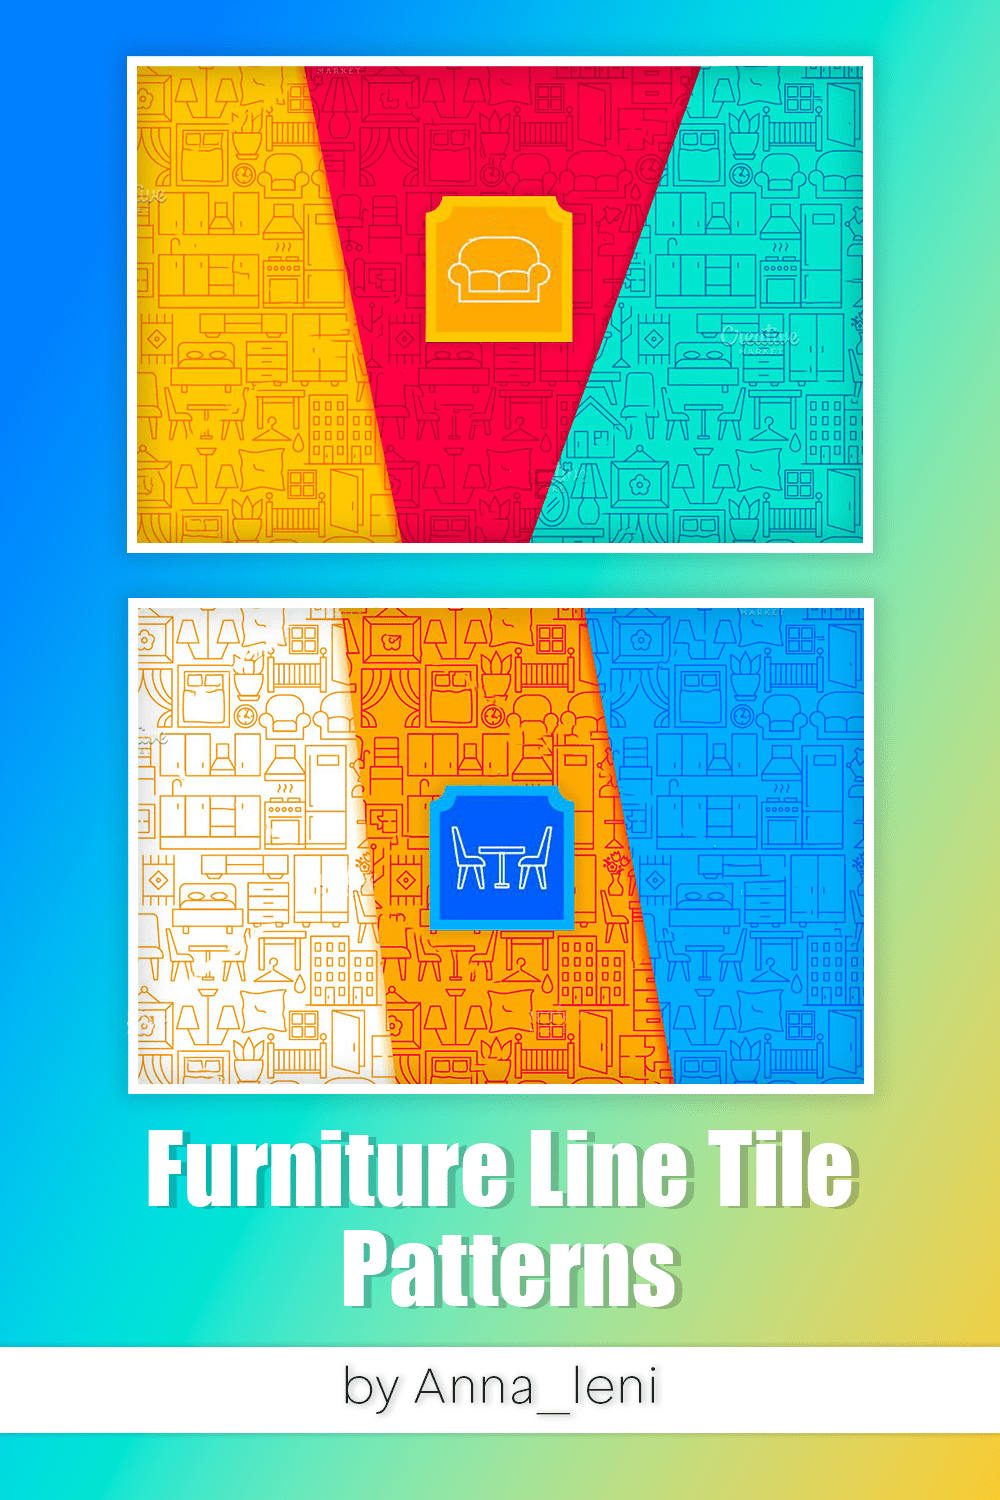 furniture line tile patterns pinterest